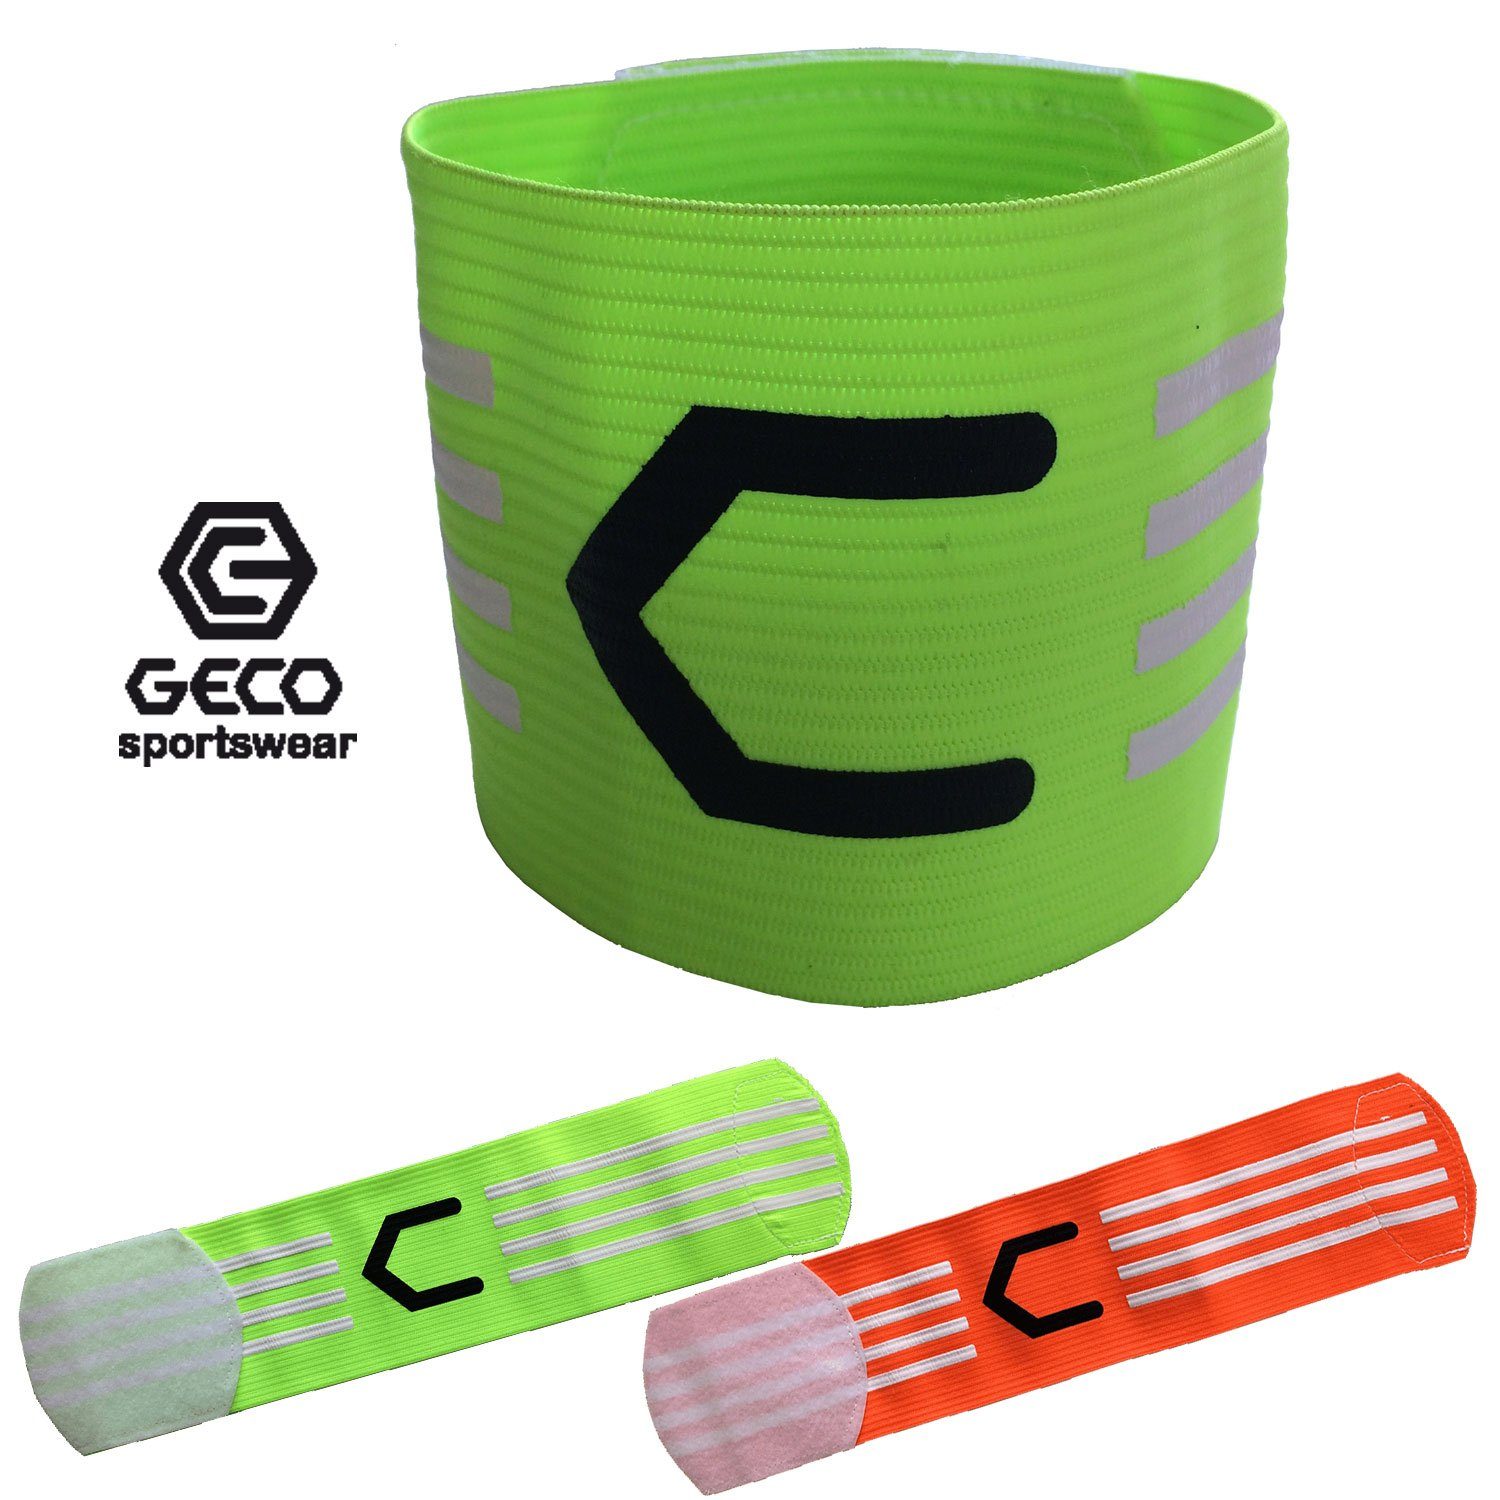 Geco Sportswear Kapitänsbinde Geco Kapitänsbinde Fußball NEON grün und orange, neon Farben grün oder orange neon orange